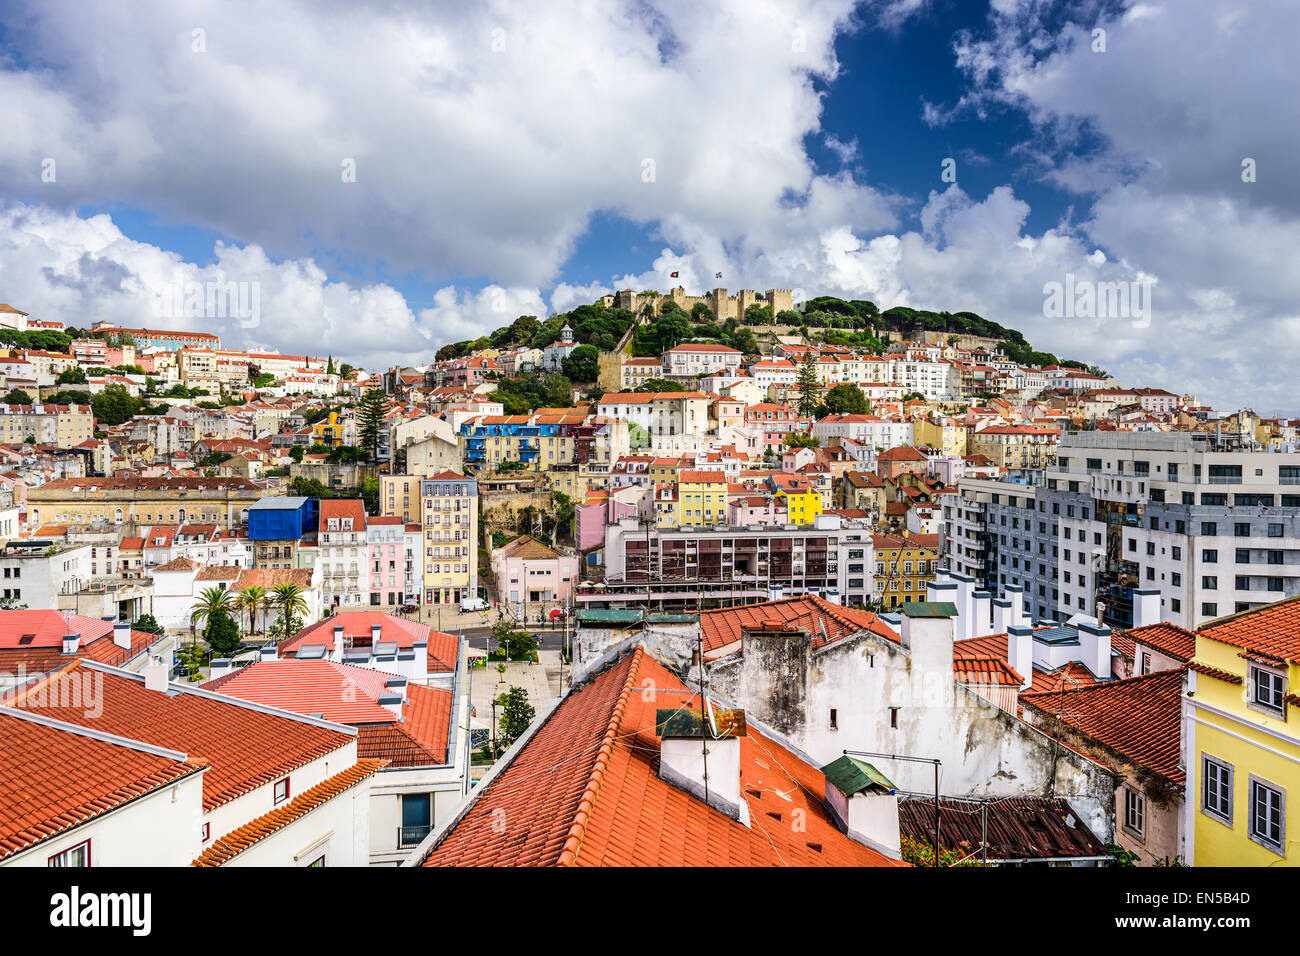 Lisbona, Portogallo cityscape verso il castello Sao Jorge. Foto Stock